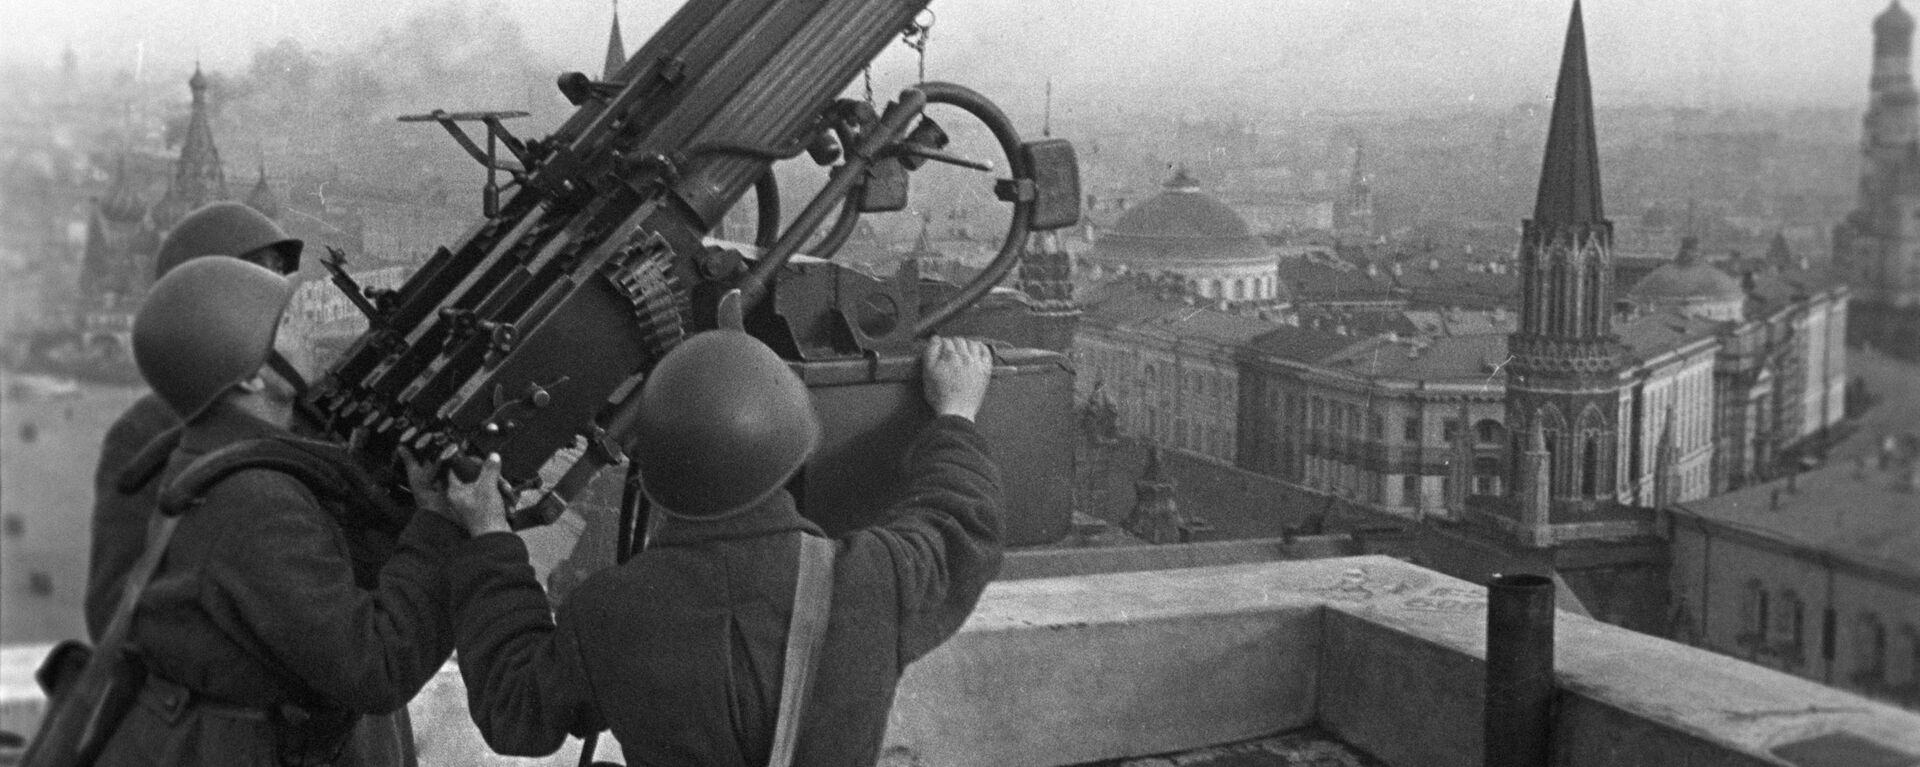 Советские зенитчики на крыше гостиницы Москва, 1941 год - Sputnik Latvija, 1920, 01.10.2021